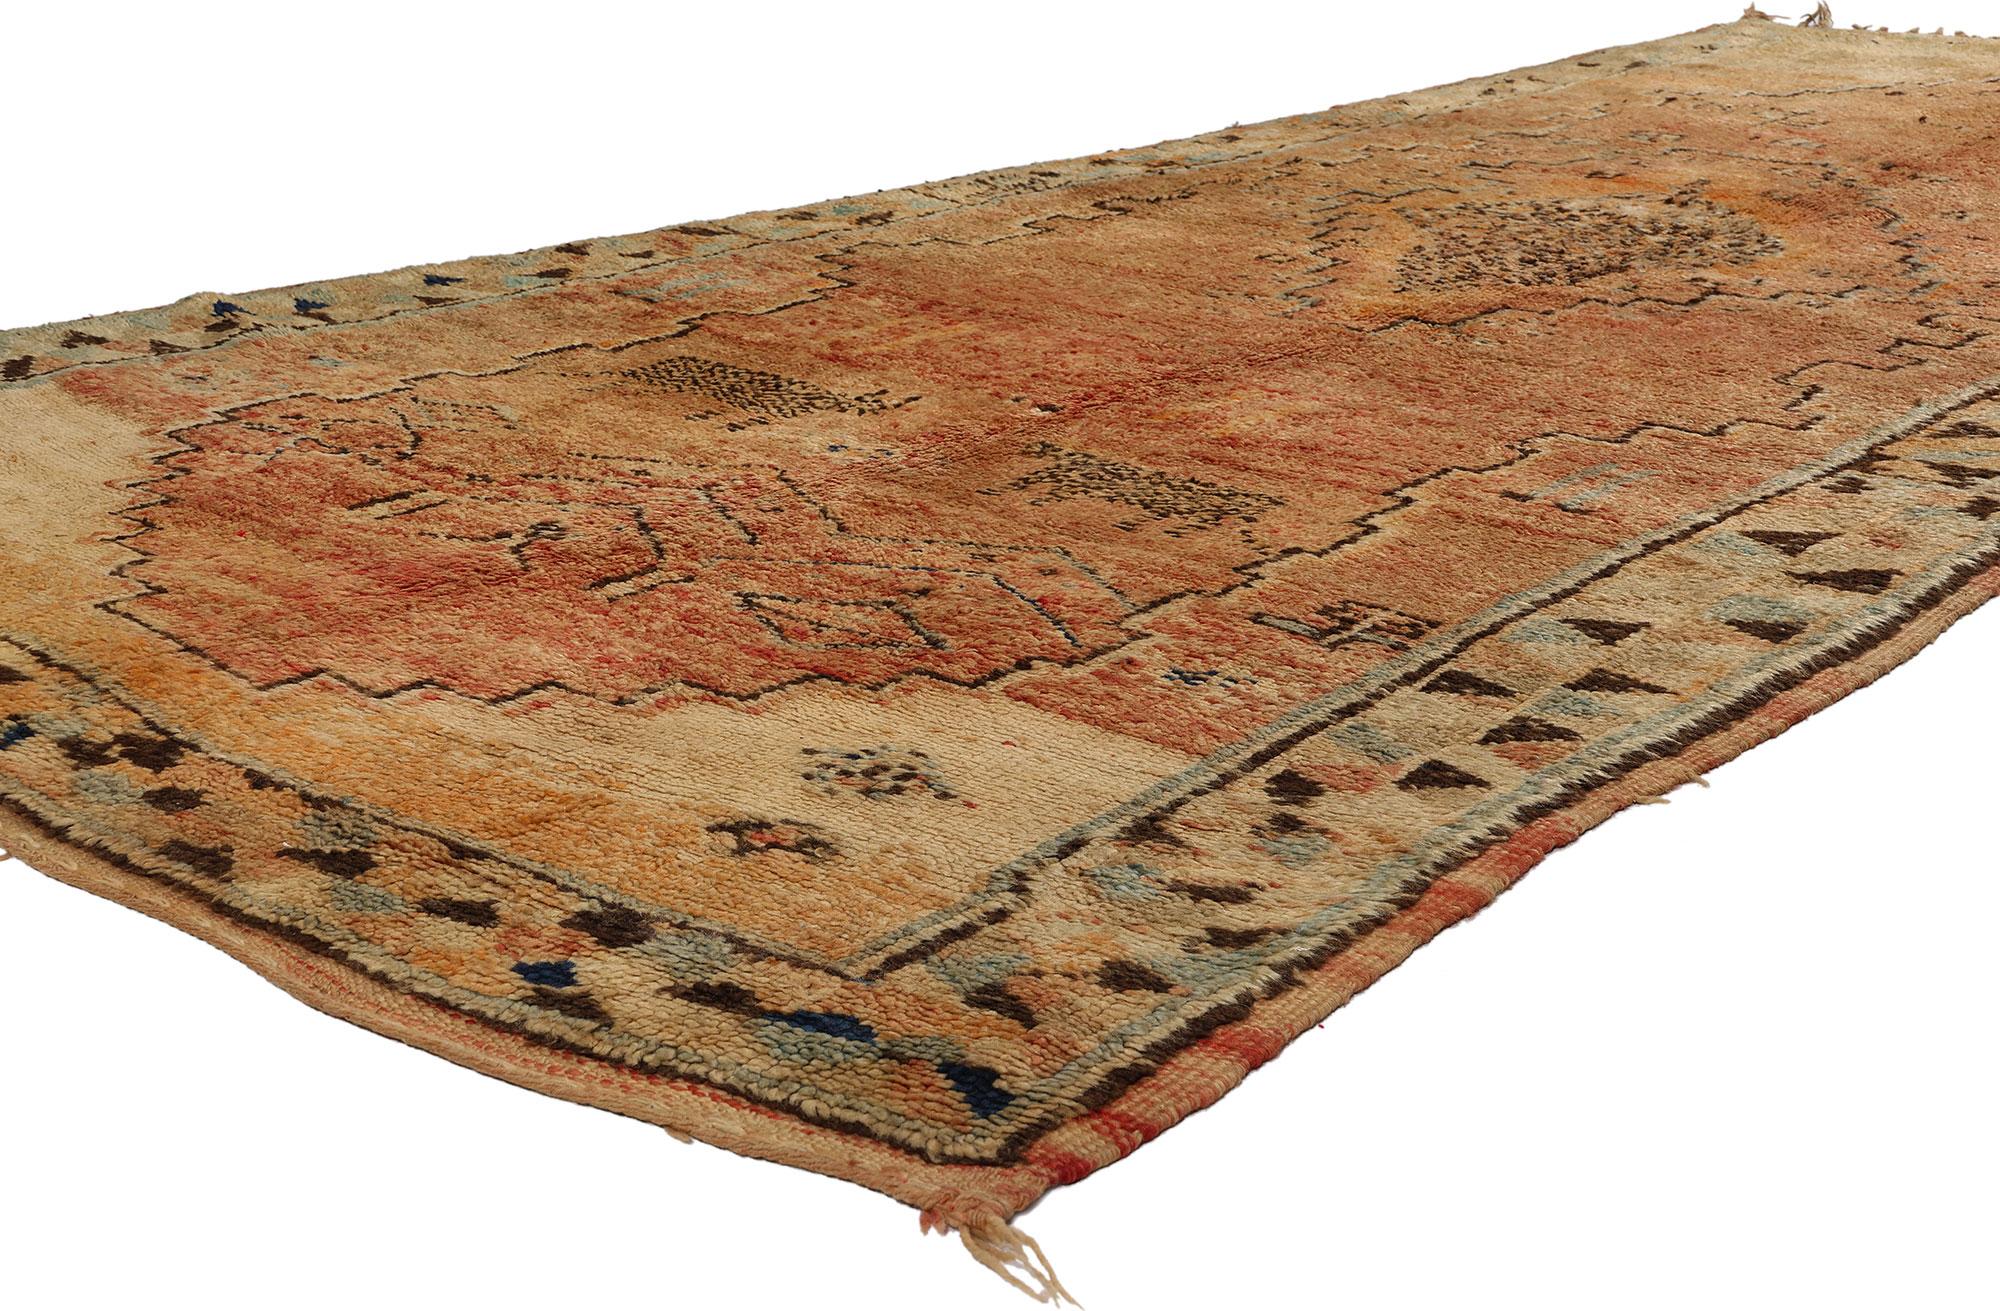 21774 Tapis marocain Vintage Boujad, 04'10 x 10'10. Les tapis Boujad, joyaux tissés à la main dans la région du Boujad au Maroc, incarnent l'art vibrant tissé de génération en génération par les tribus berbères, notamment les Haouz et les Rehamna.